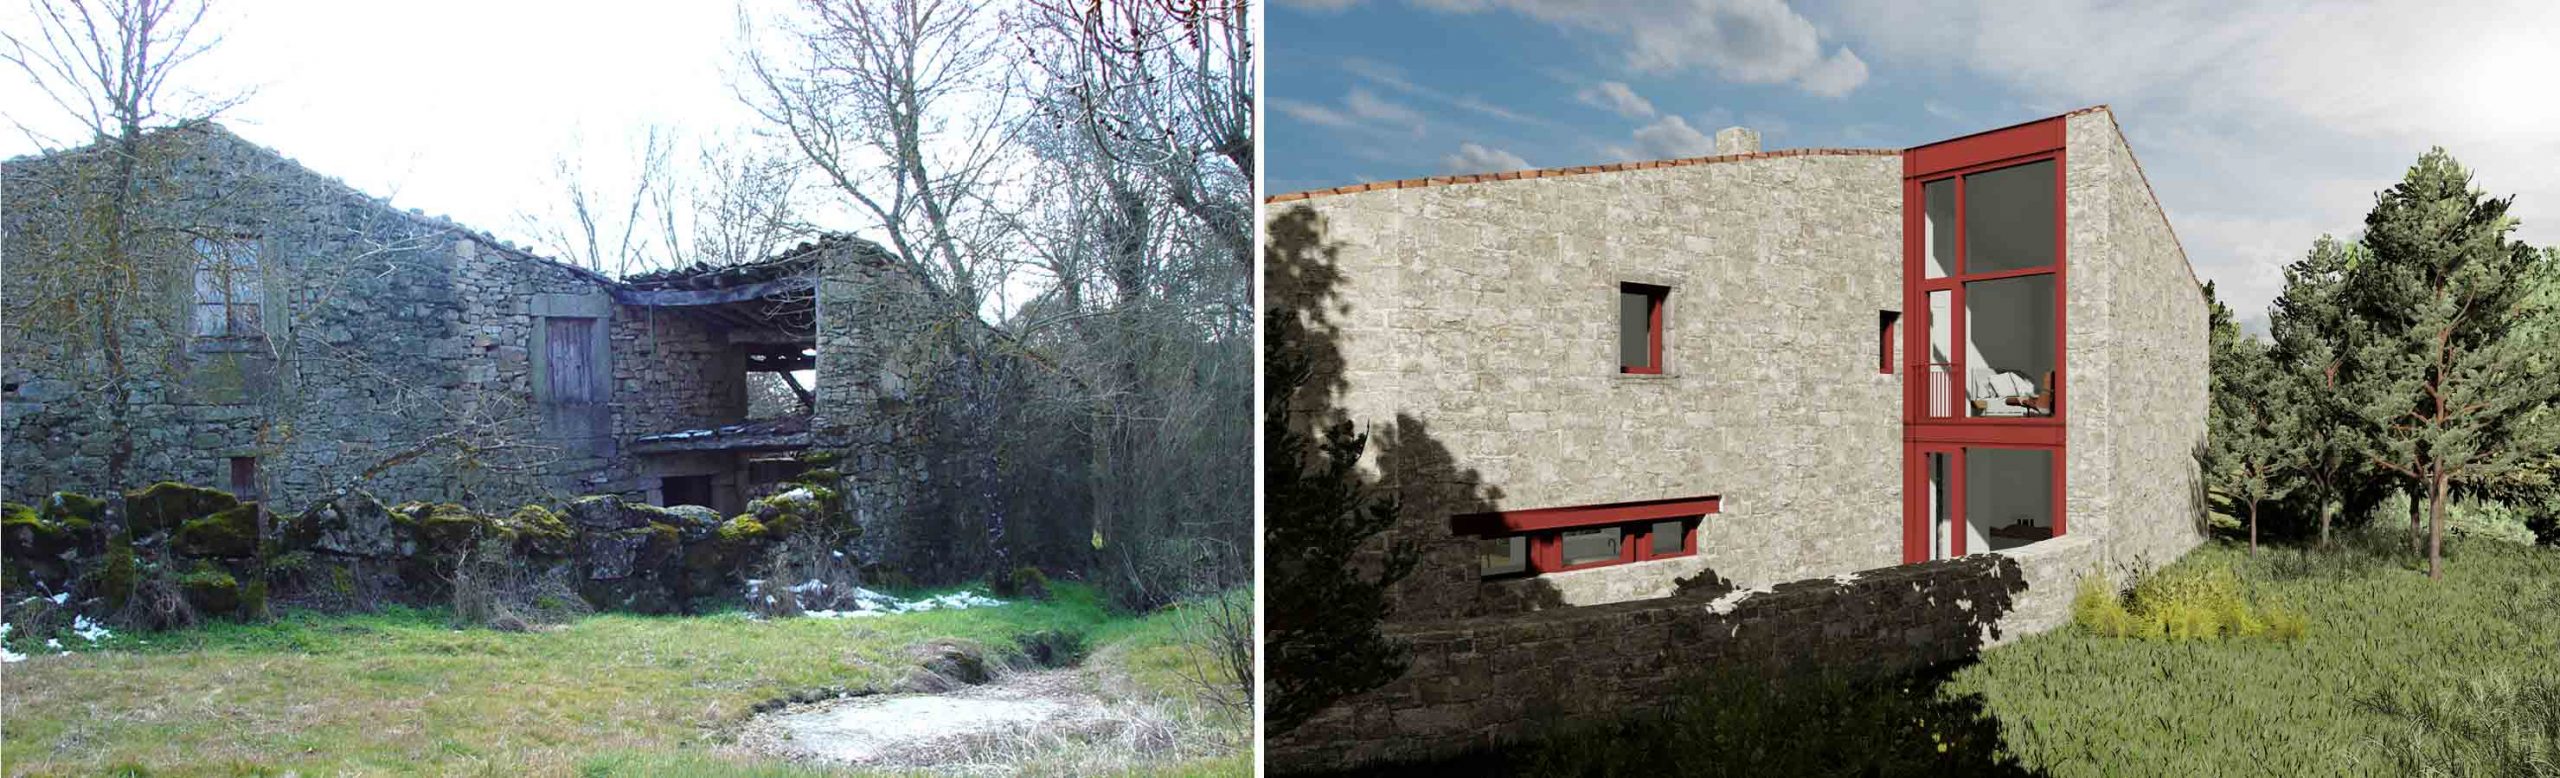 Casa na Aldeia Nova - Vista de antes e depois do projecto de remodelação de uma casa rural de Aldeia Nova, Miranda do Douro